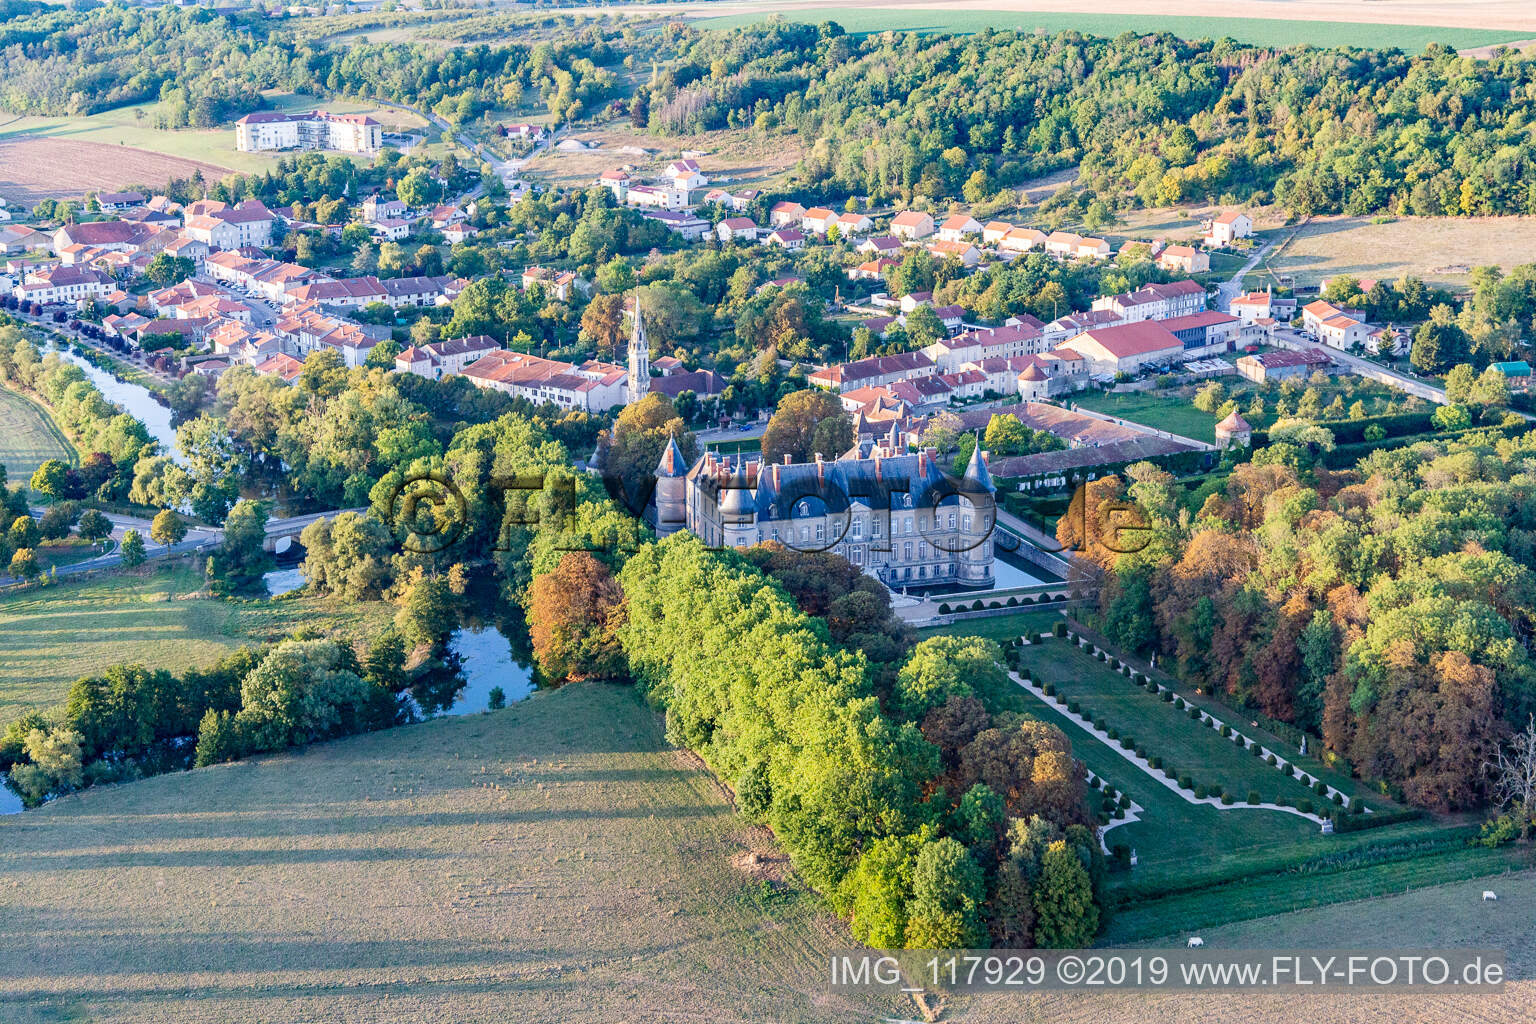 Chateau de Haroué im Bundesland Meurthe-et-Moselle, Frankreich aus der Drohnenperspektive